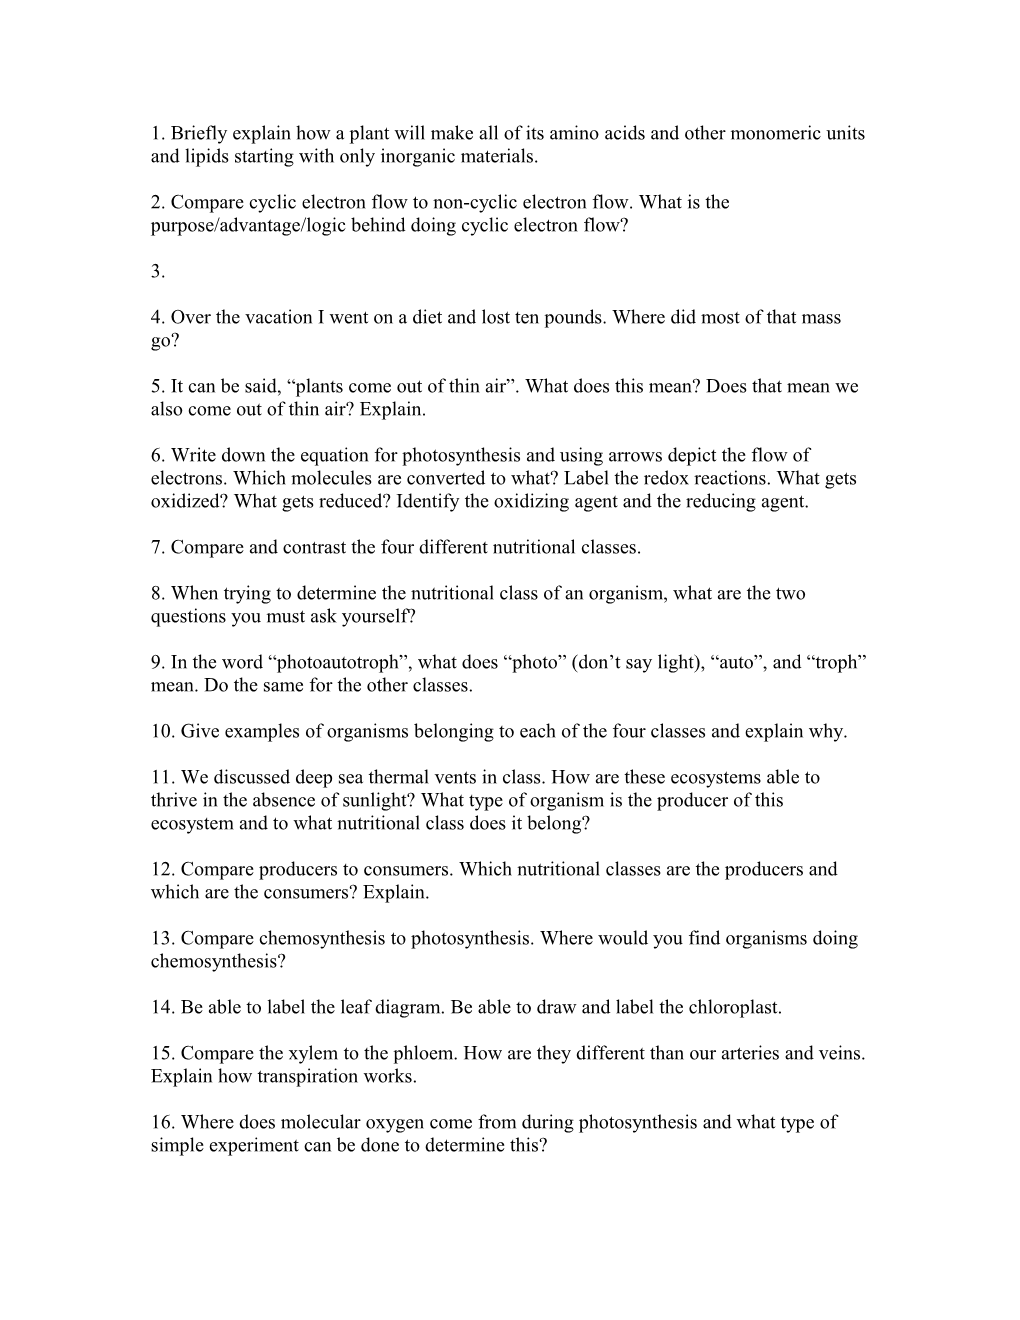 Exam 1 Q2 Review Sheet